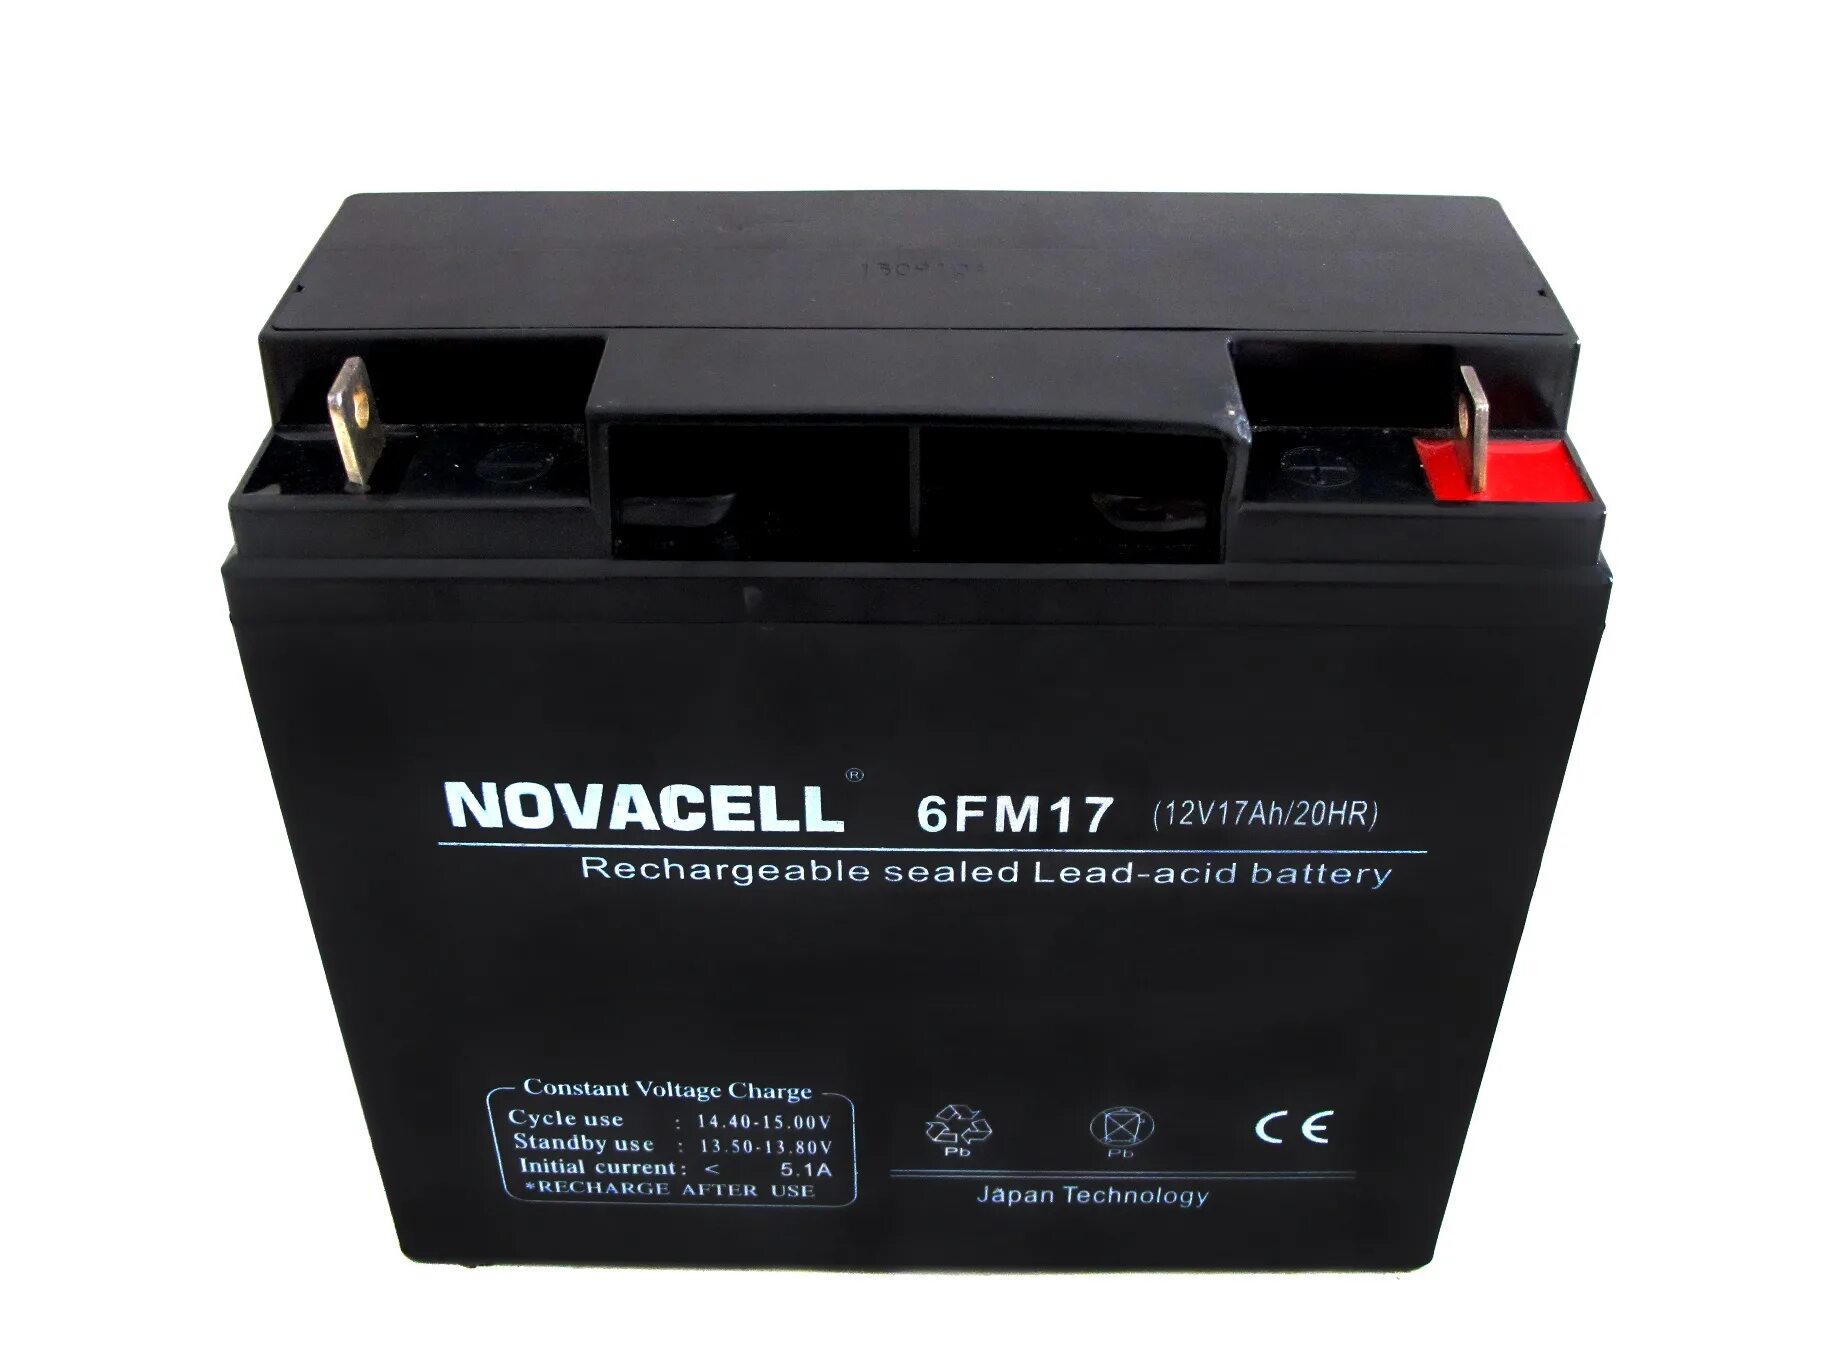 Аккумулятор св. Аккумуляторы Denzel lead acid Battery 6-fm-18 12v 17ah 204 WH. Bestway Sealed Rechargeable lead-acid Battery sp12-13a. АКБ Panasonic 12v 17ah. Аккумуляторная батарея Hyundai 12v 36ah.